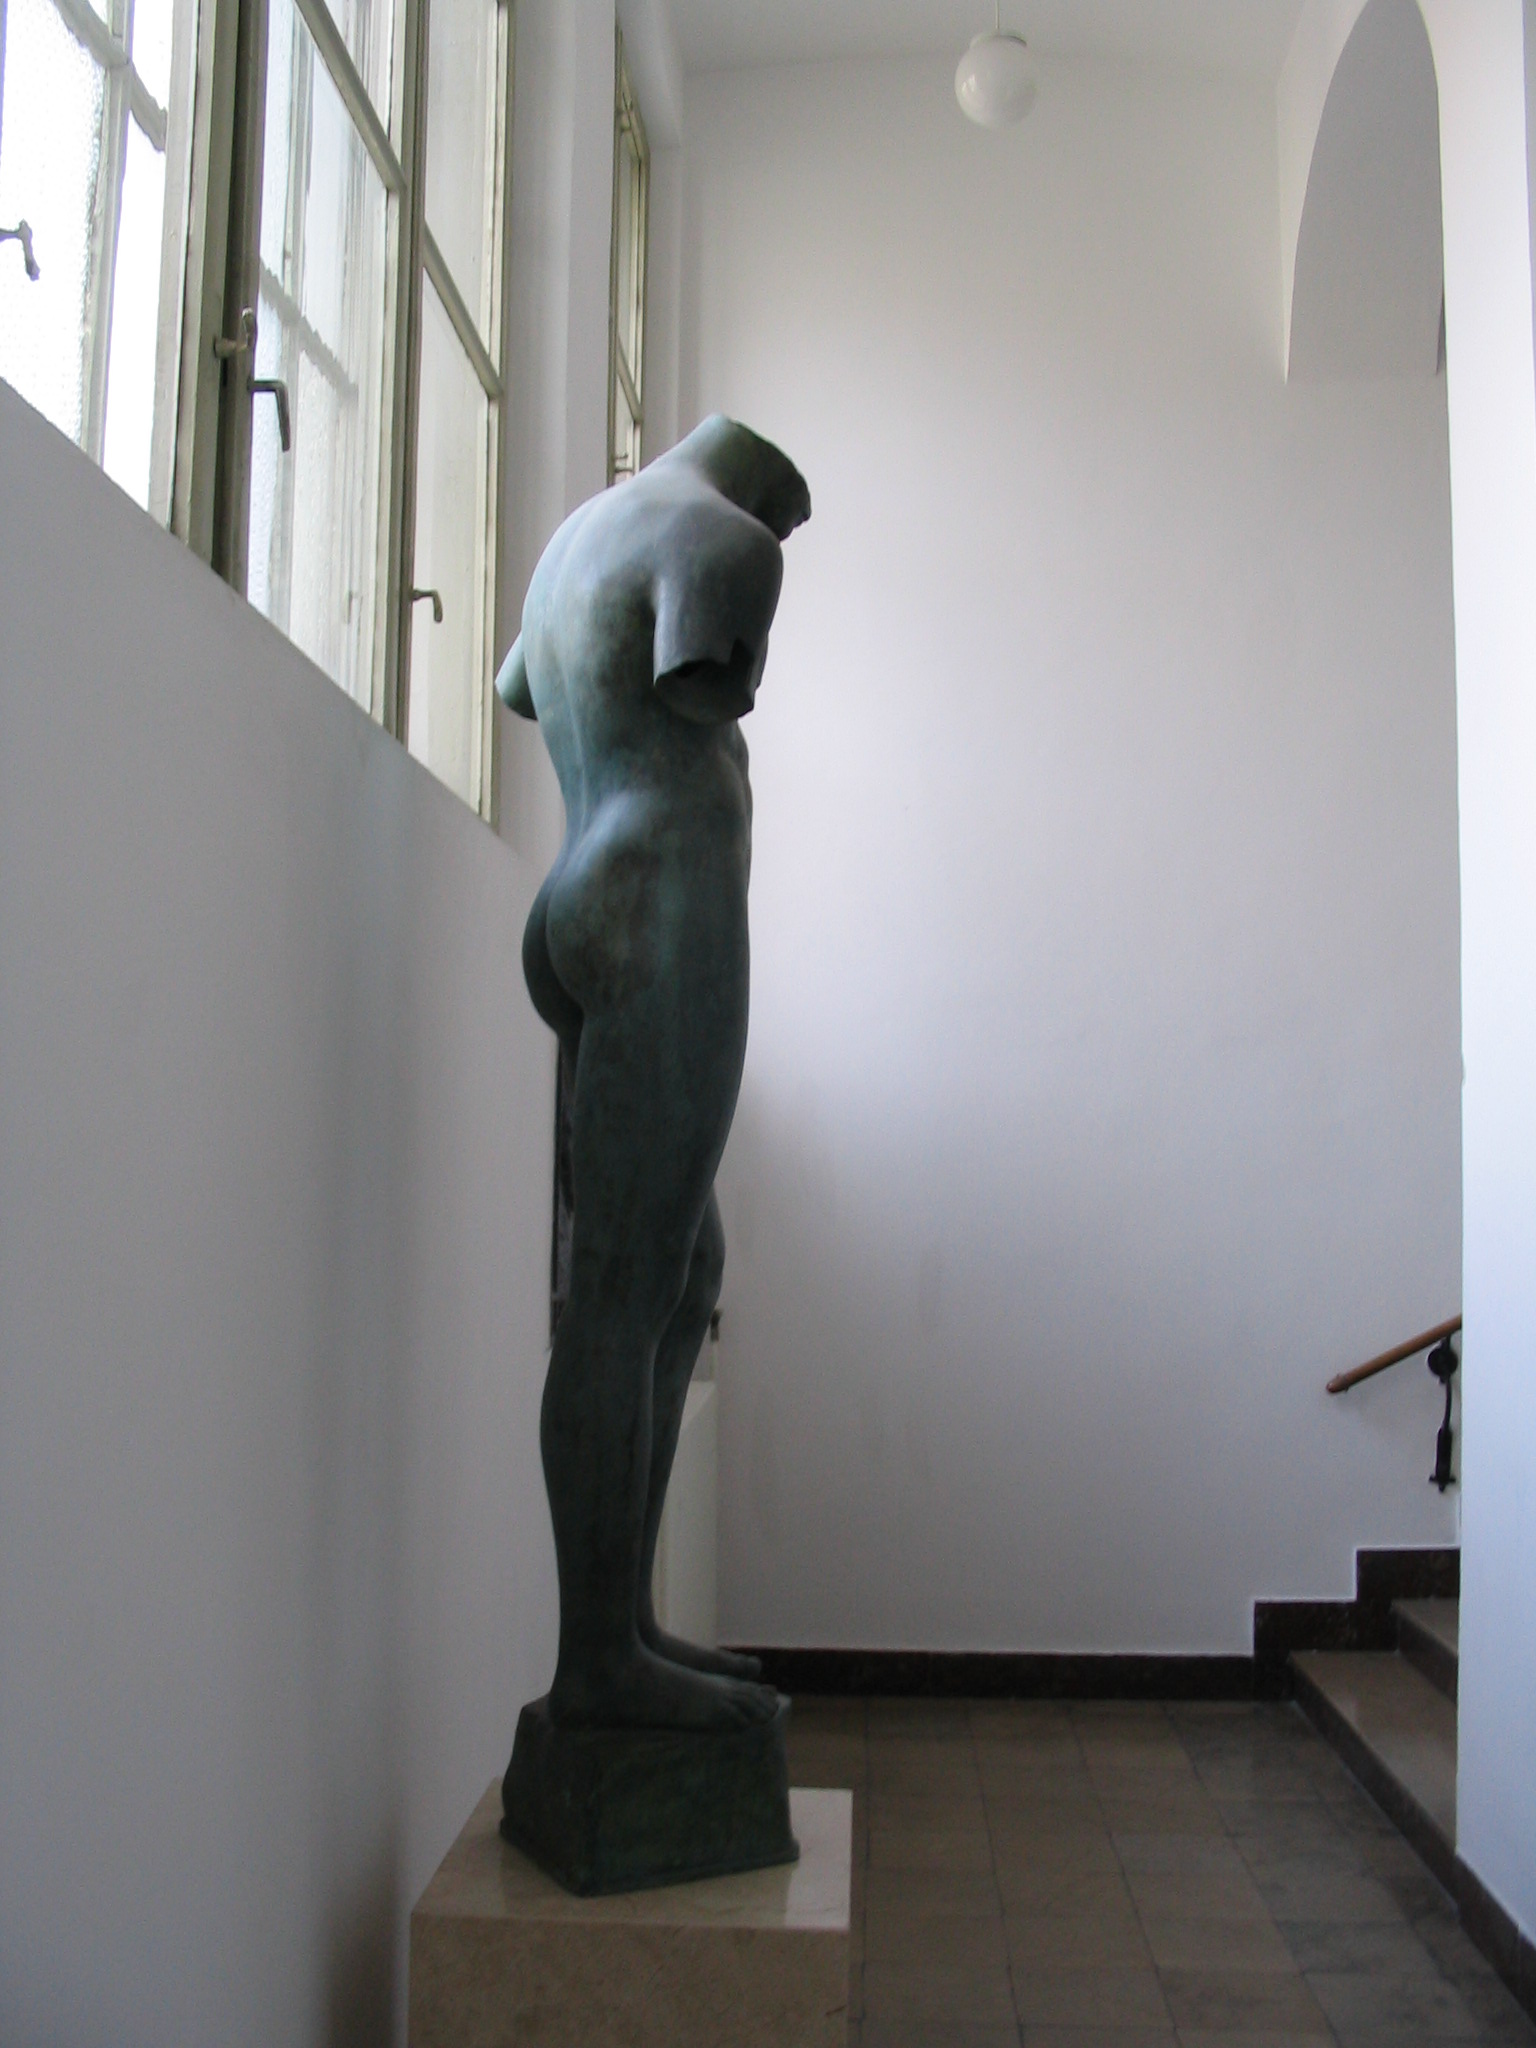 Igor Mitoraj (1944-2014), "Nudo", rzeźba podarowana przez artystę do zbiorów Muzeum ASP w 2003 roku, fot. z archiwum autorki